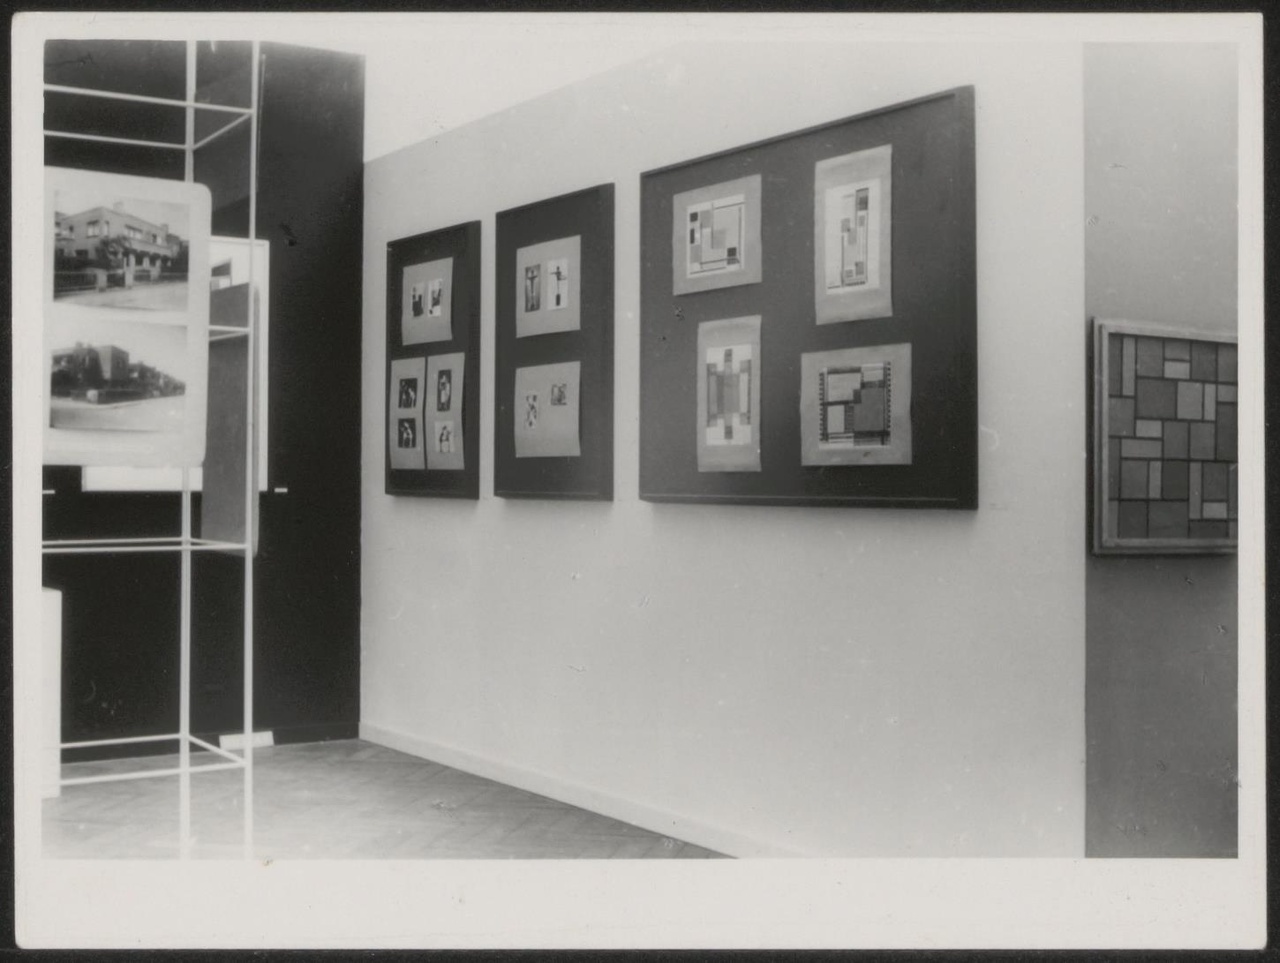 Afbeelding van tentoonstelling De Stijl SMA, 1951, zaal 2, witte wand met drie zwarte panelen